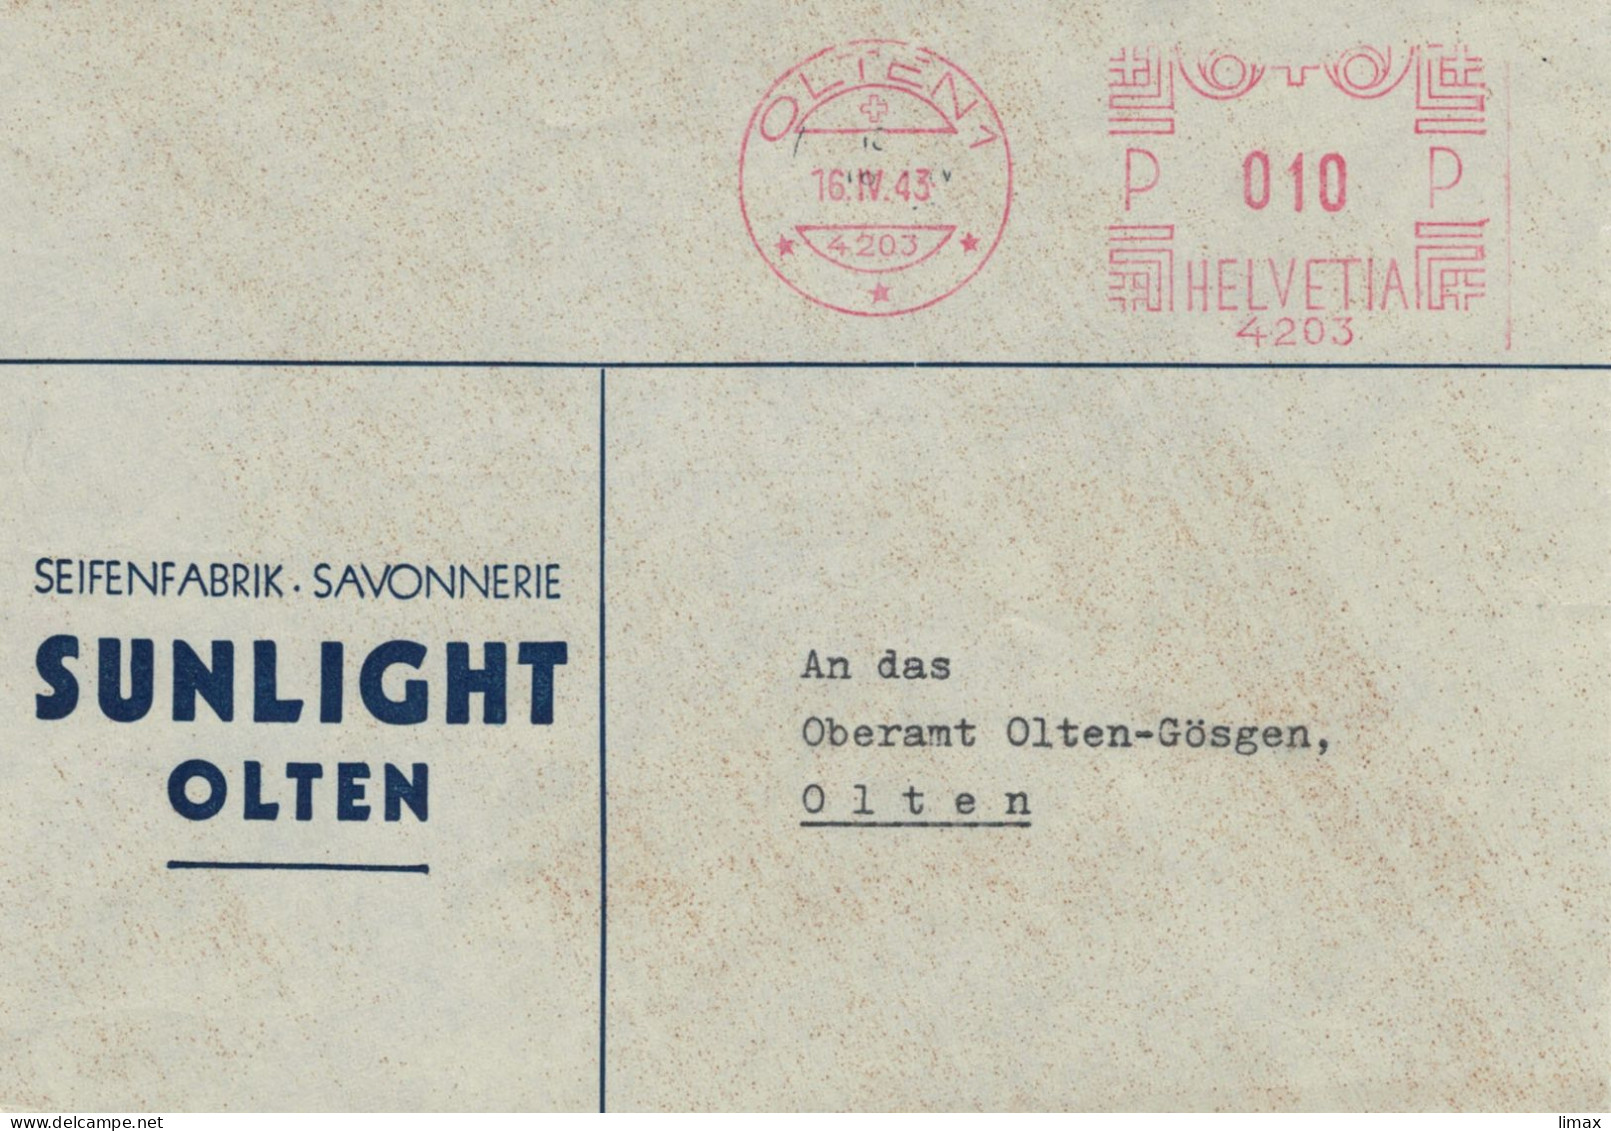 Seifenfabrik Savonnerie Sunlight Olten 1943 No. 4203 - Ortsbrief - Frankeermachinen